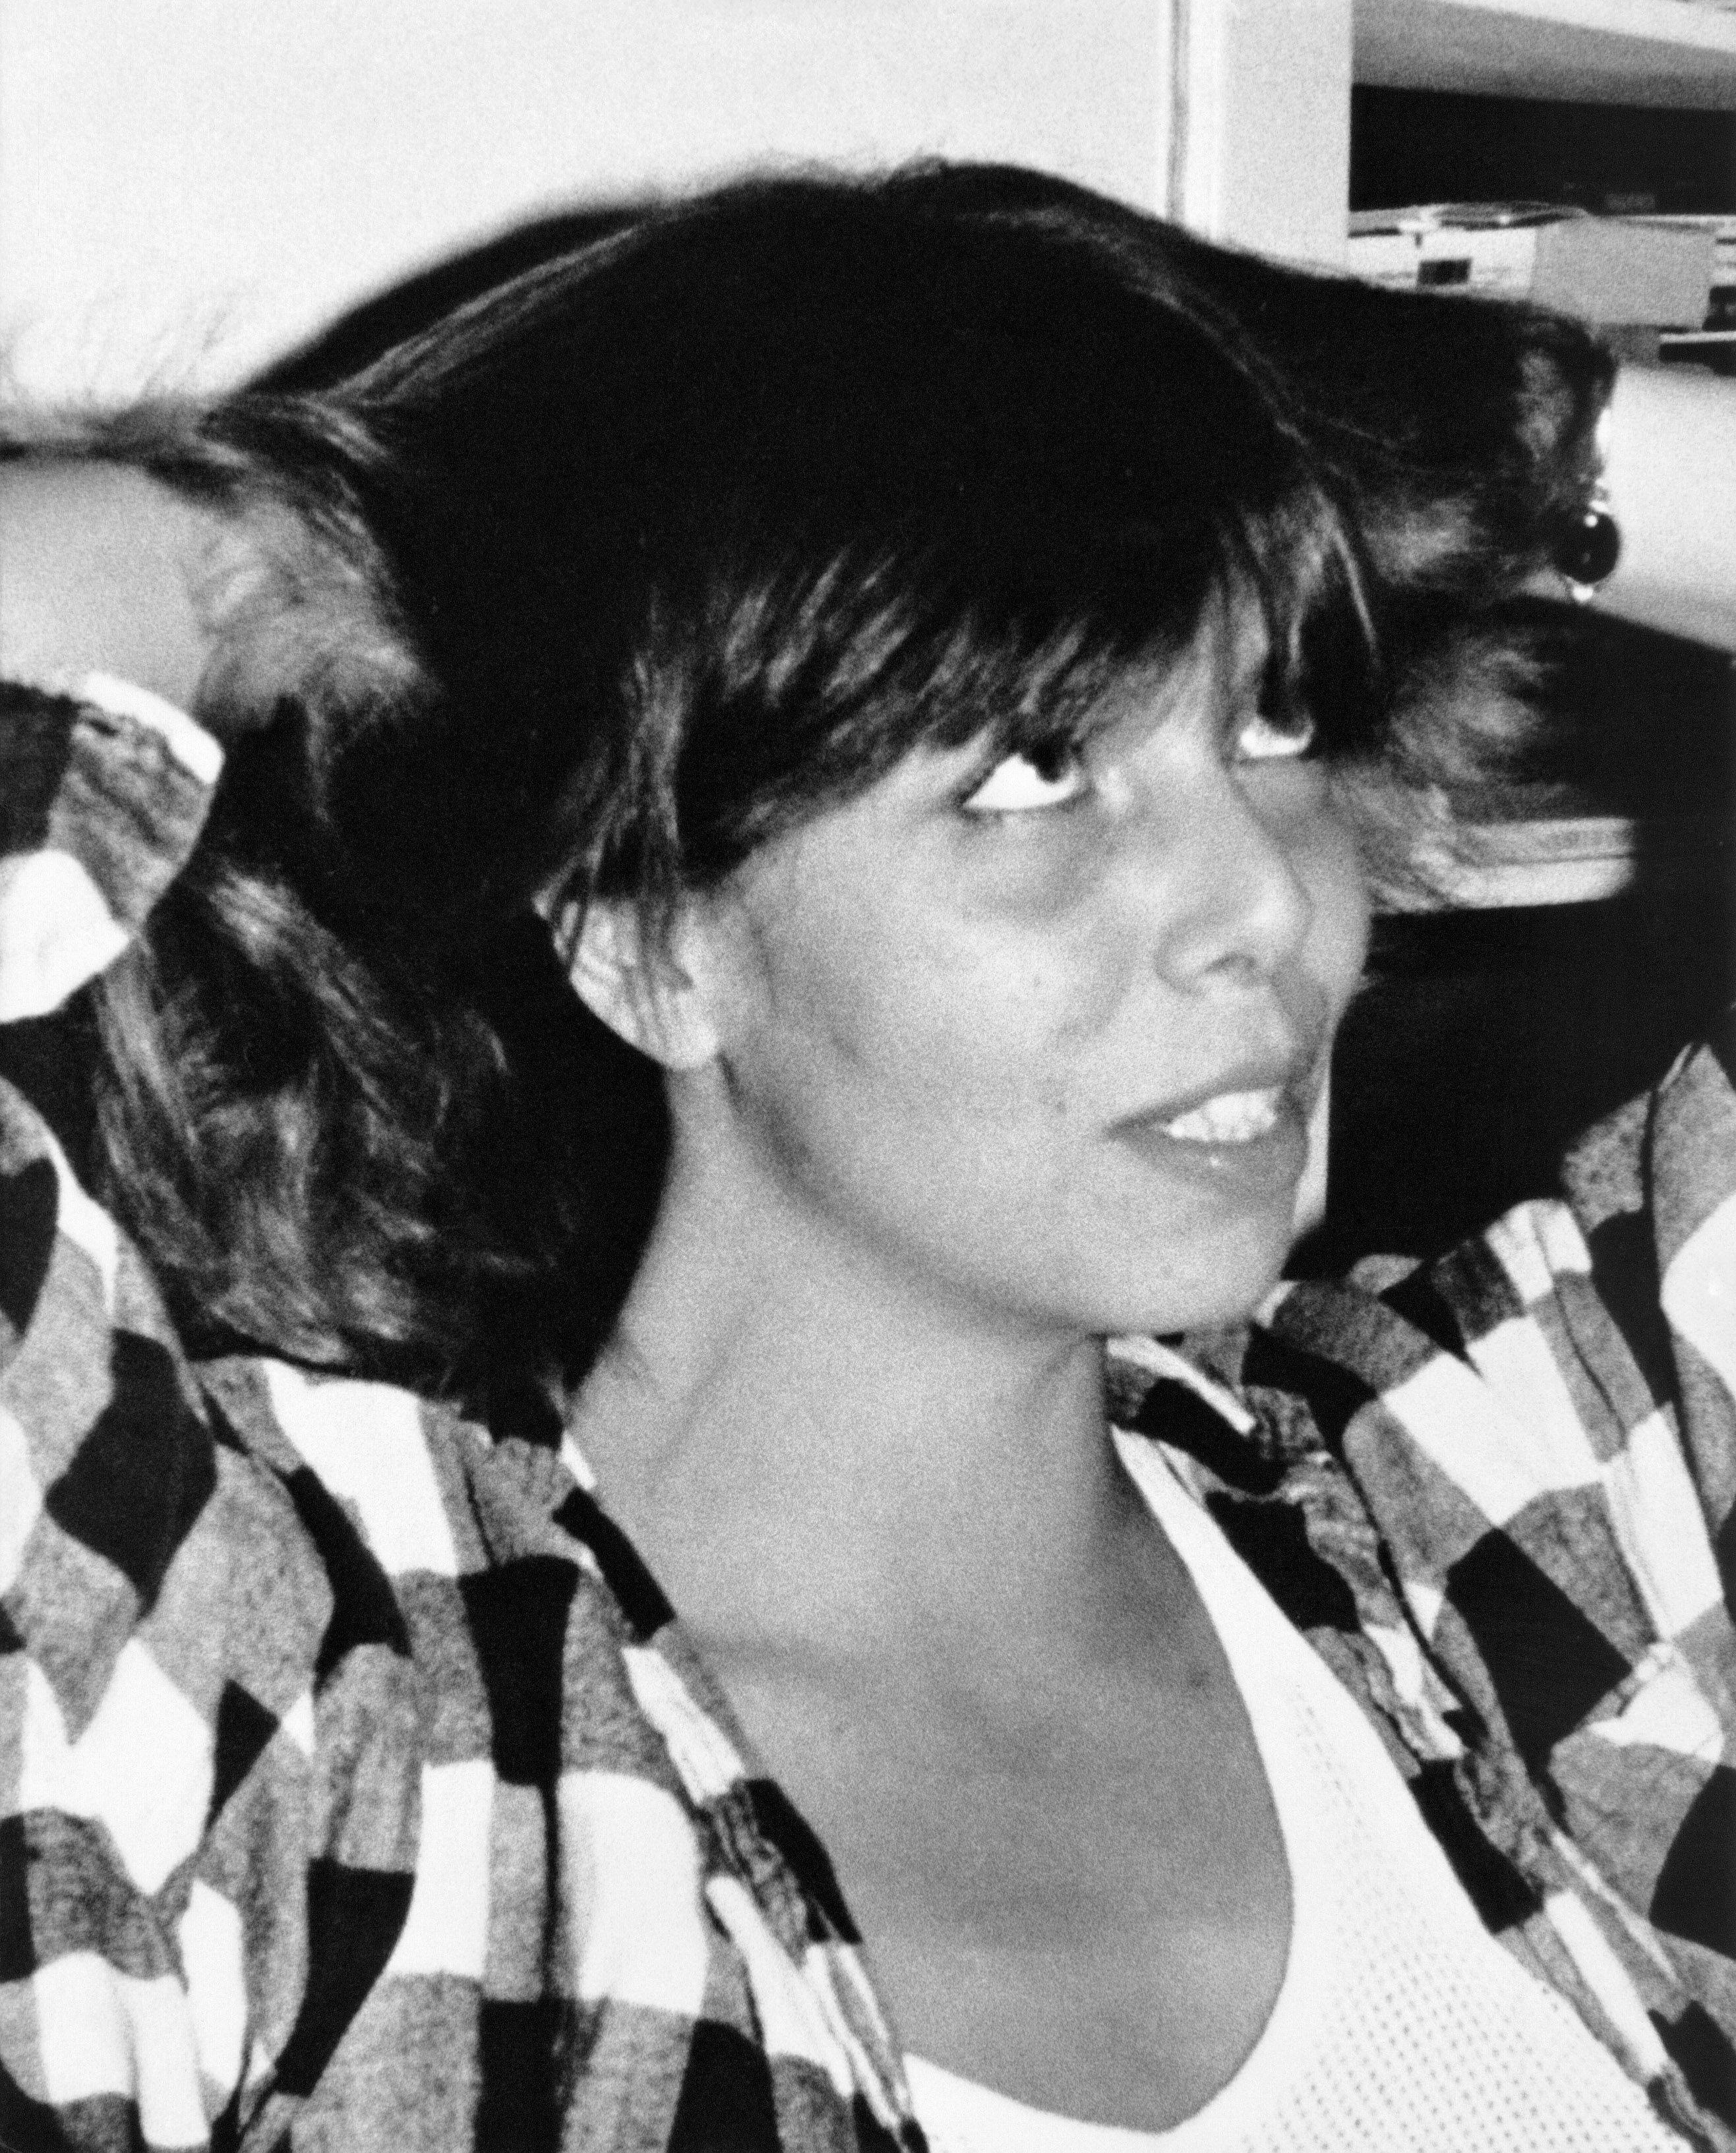 Hanne With blev dræbt nytårsnat 1989/90 i sin lejlighed i Fensmarksgade. Dna-spor ført til anholdelse af en 53-årig mand som den 7. februar 2024 blev en fremstillet i grundlovsforhør sigtet for drabet på den 23-årige kvinde.